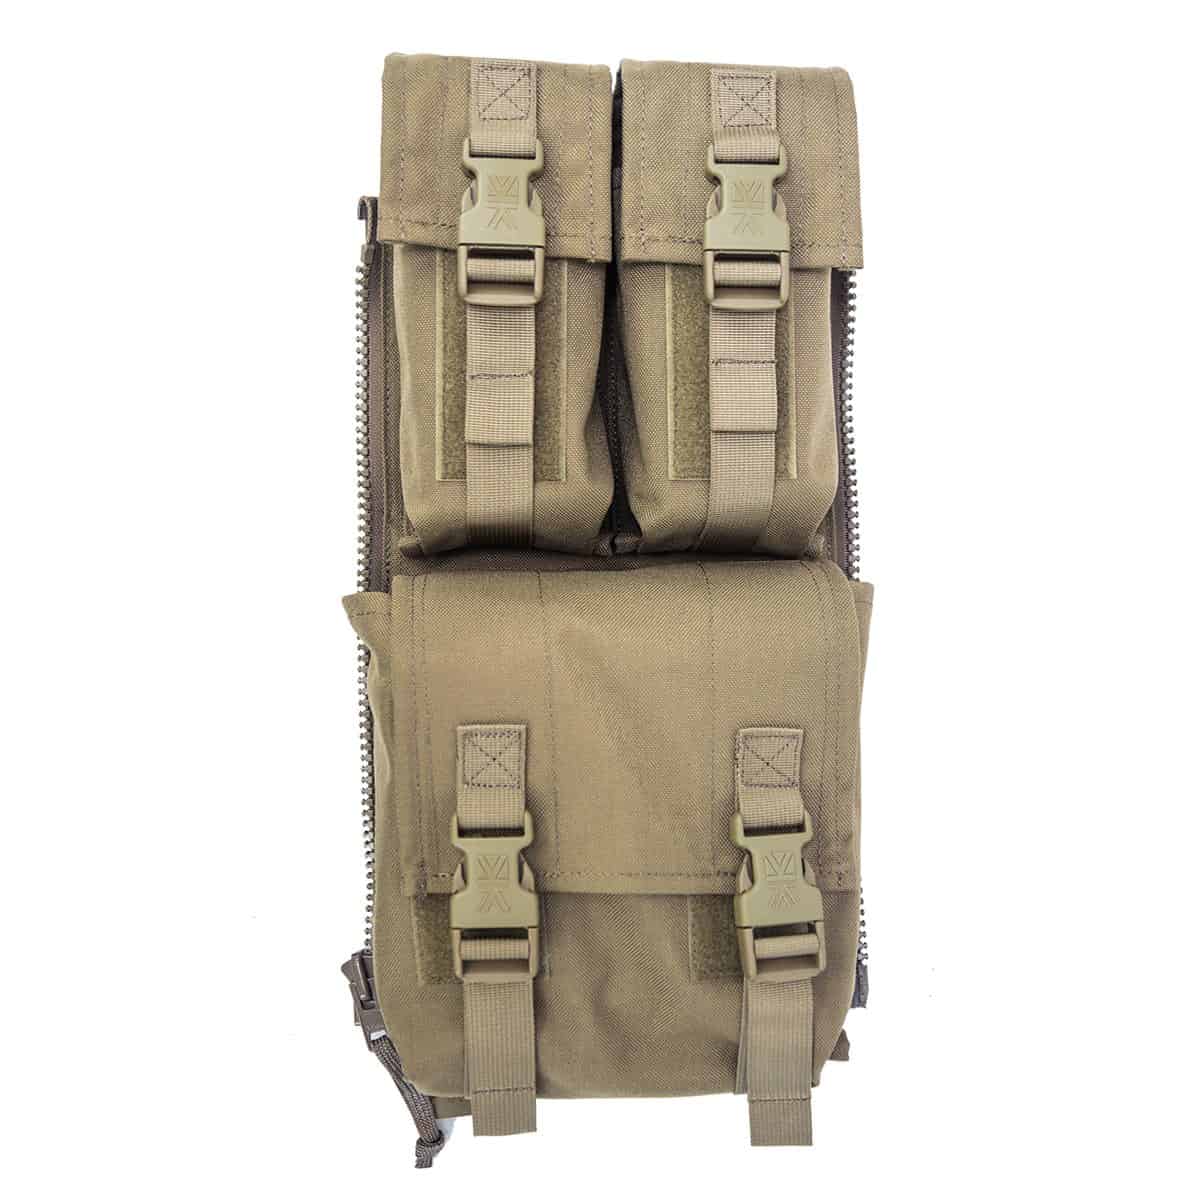 Izberite stransko vojaško torbo Predator PLCE od Karrimor SF, kompatibilno z vsemi PLCE nahrbtniki. Vrhunska kakovost, praktičnost in taktični dizajn za vojaško opremo. Kupite na spletu zdaj!